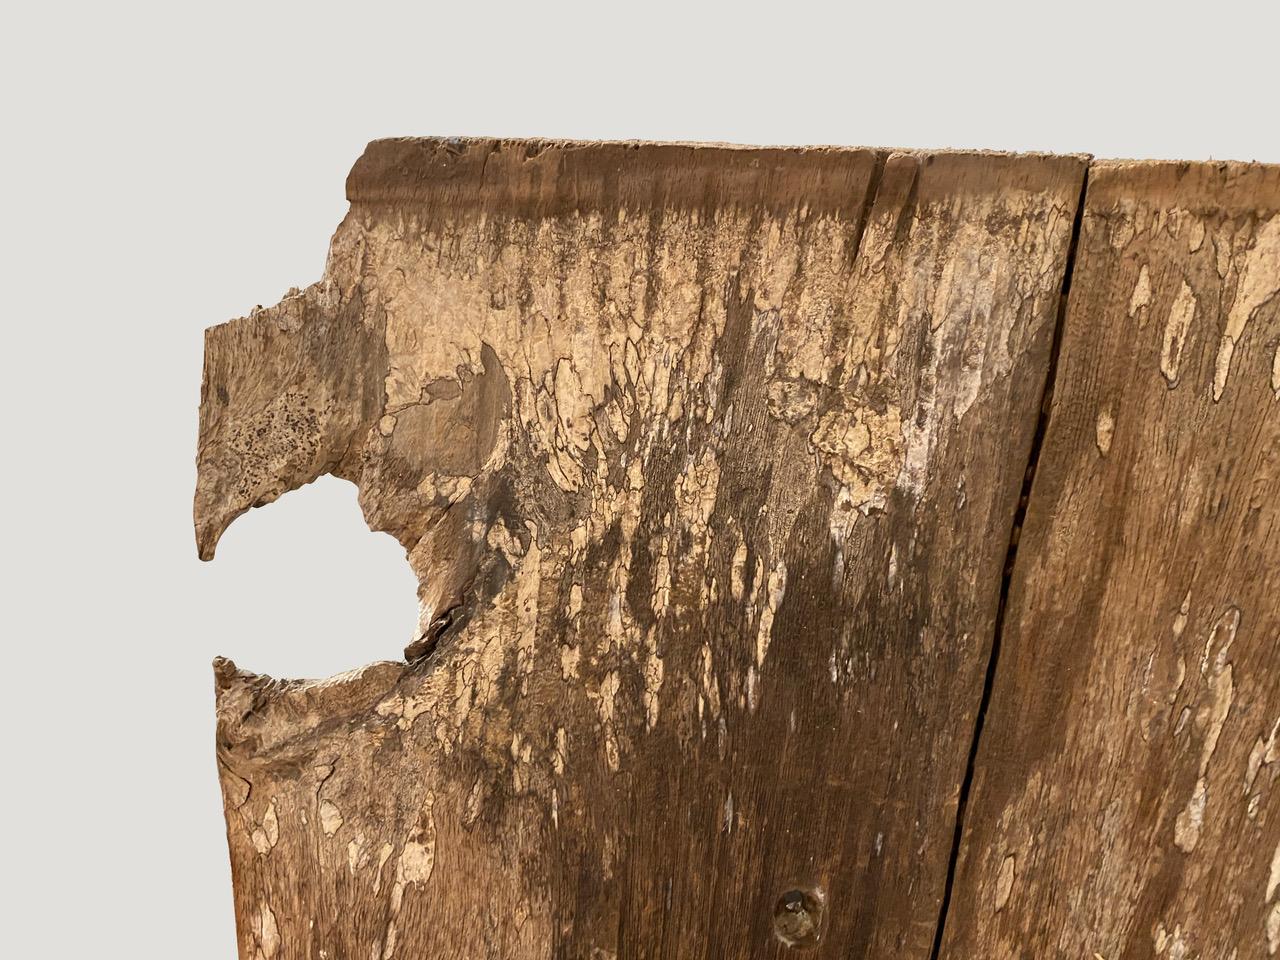 Panneau architectural antique sculpté à la main de Toraja. Cette sculpture symbolise la protection de la maison. Utilisé à l'origine comme panneau extérieur. Grande pièce d'art.

Ce panneau ancien a été réalisé dans l'esprit du wabi-sabi, une